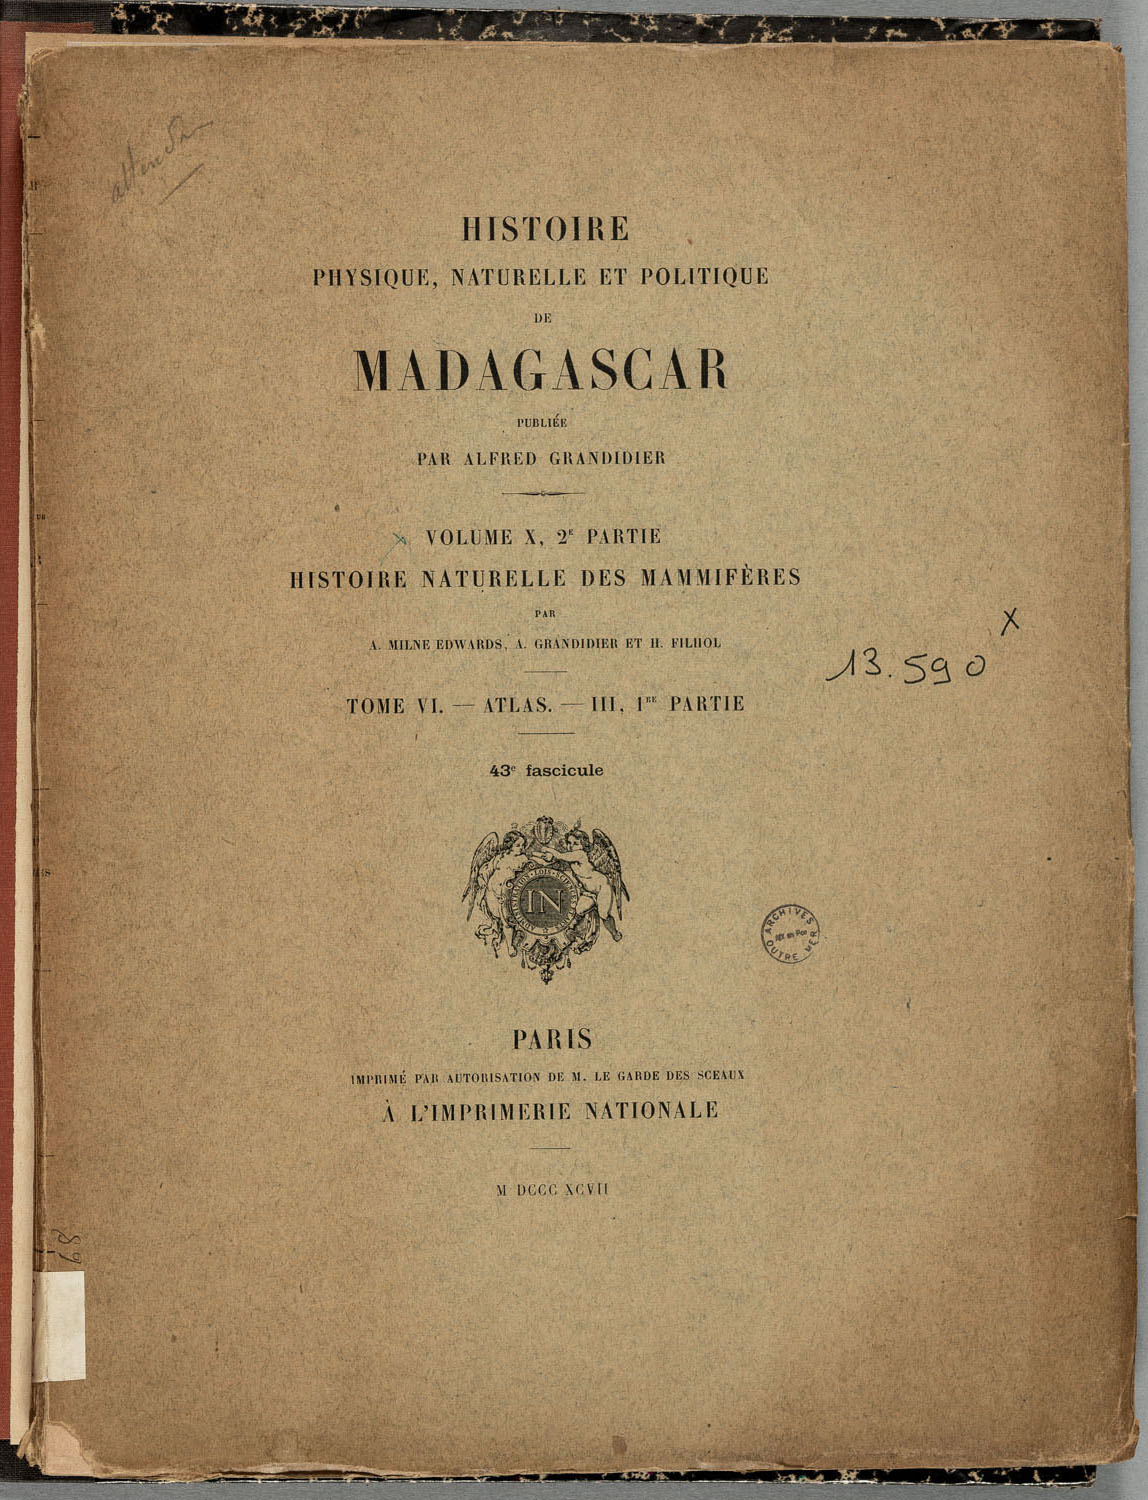 Grandidier (Alfred), Histoire physique, naturelle et politique de Madagascar